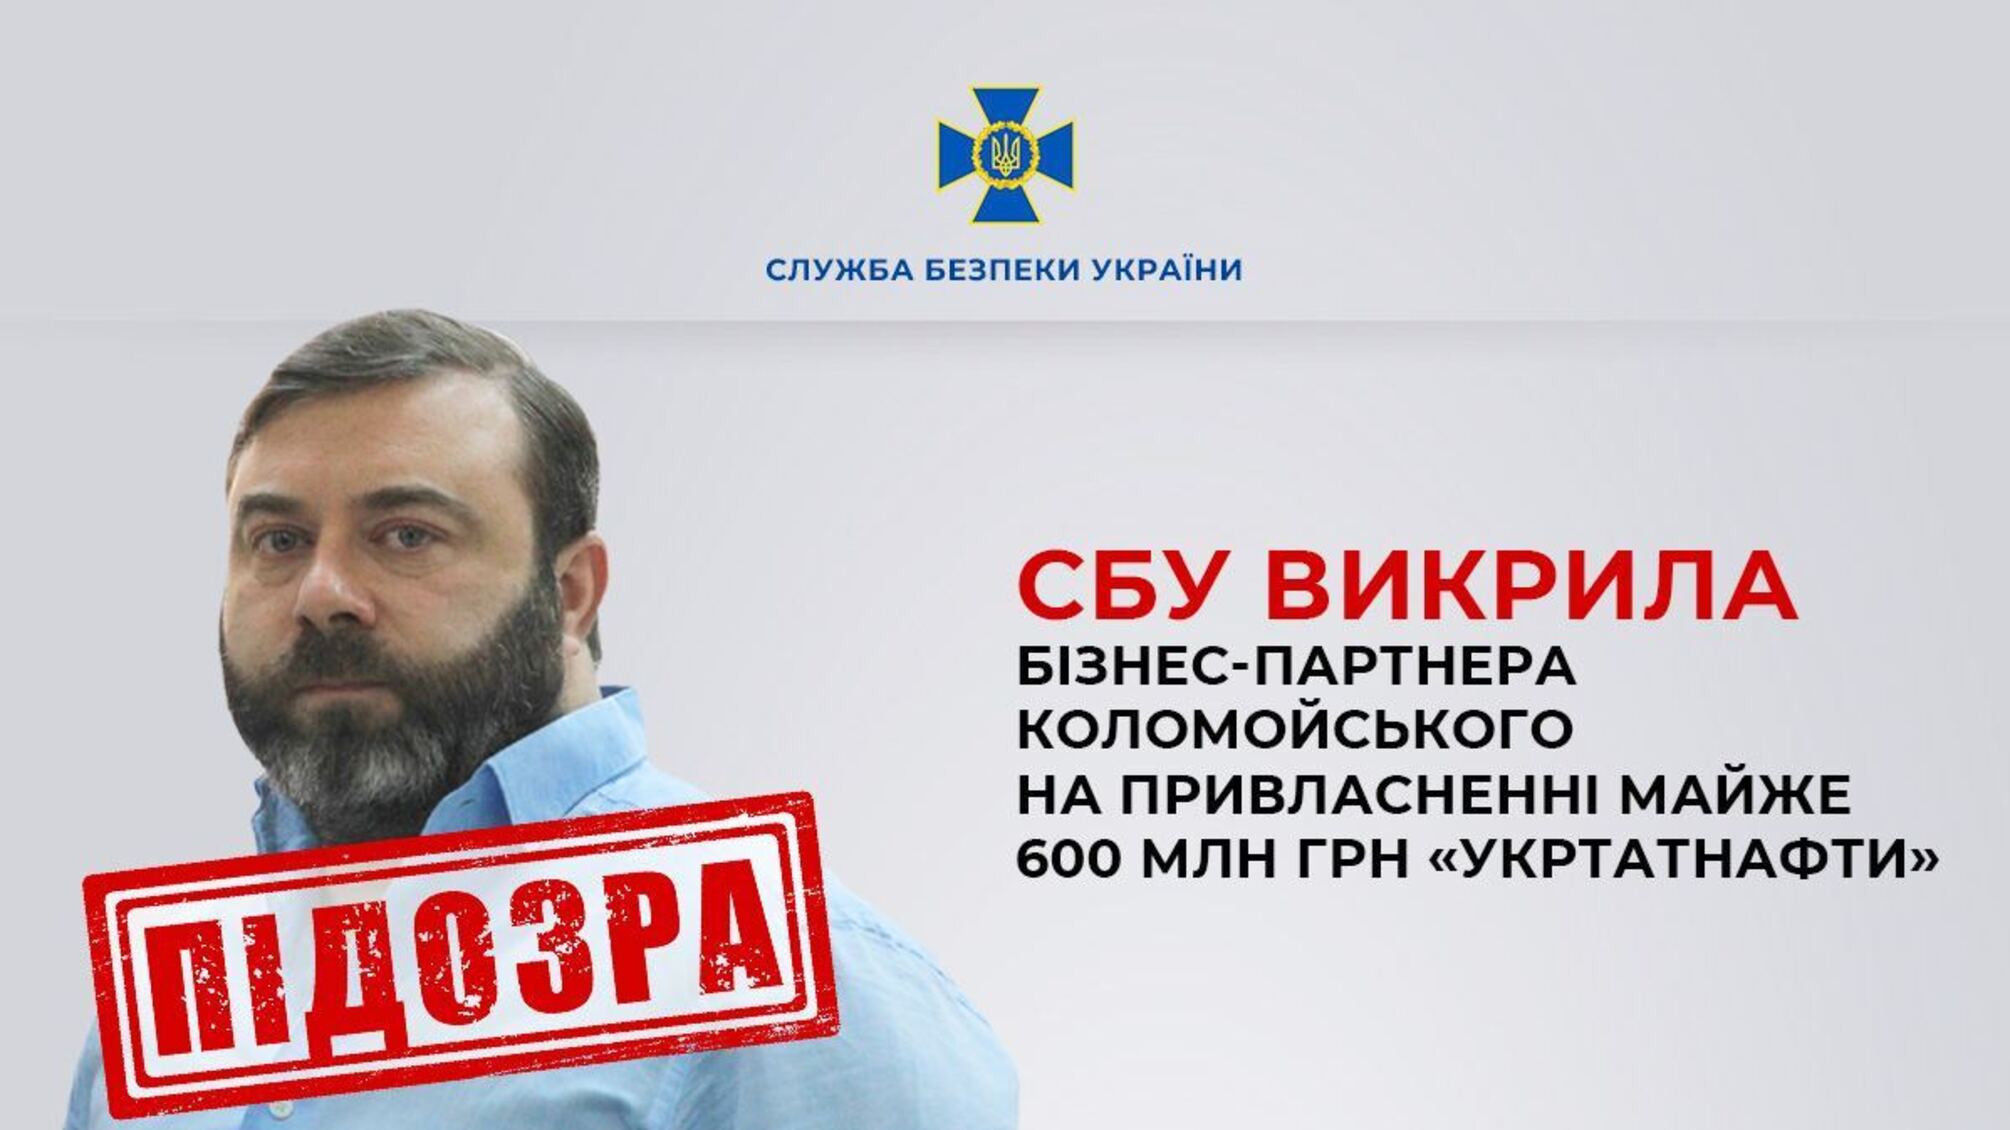 Ексчоловіка Брєжнєвої та бізнес-партнера Коломойського викрили на крадіжці 600 млн грн 'Укртатнафти'